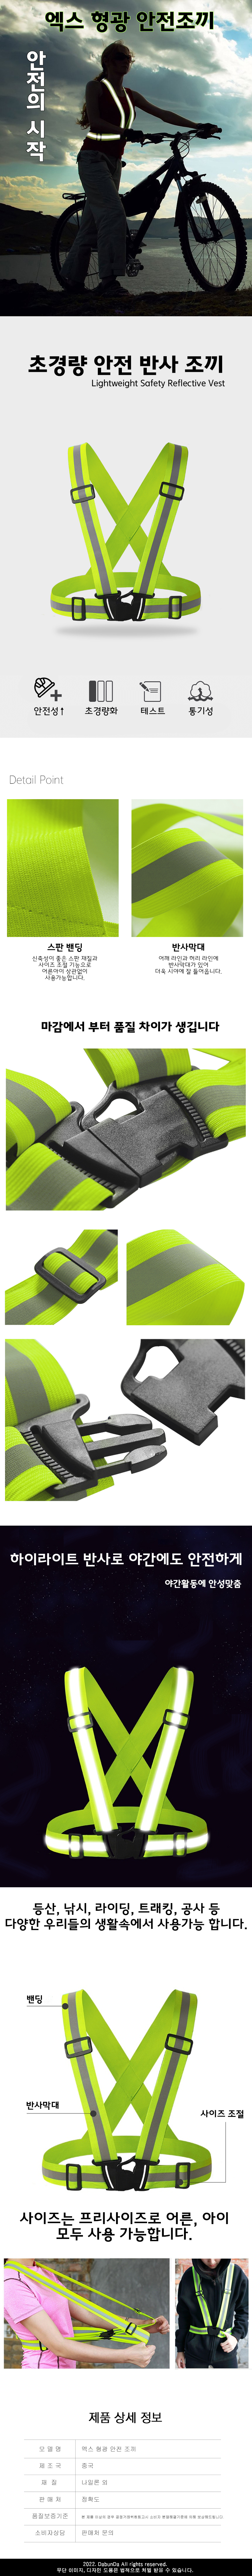 X fluorescent safety vest.jpg